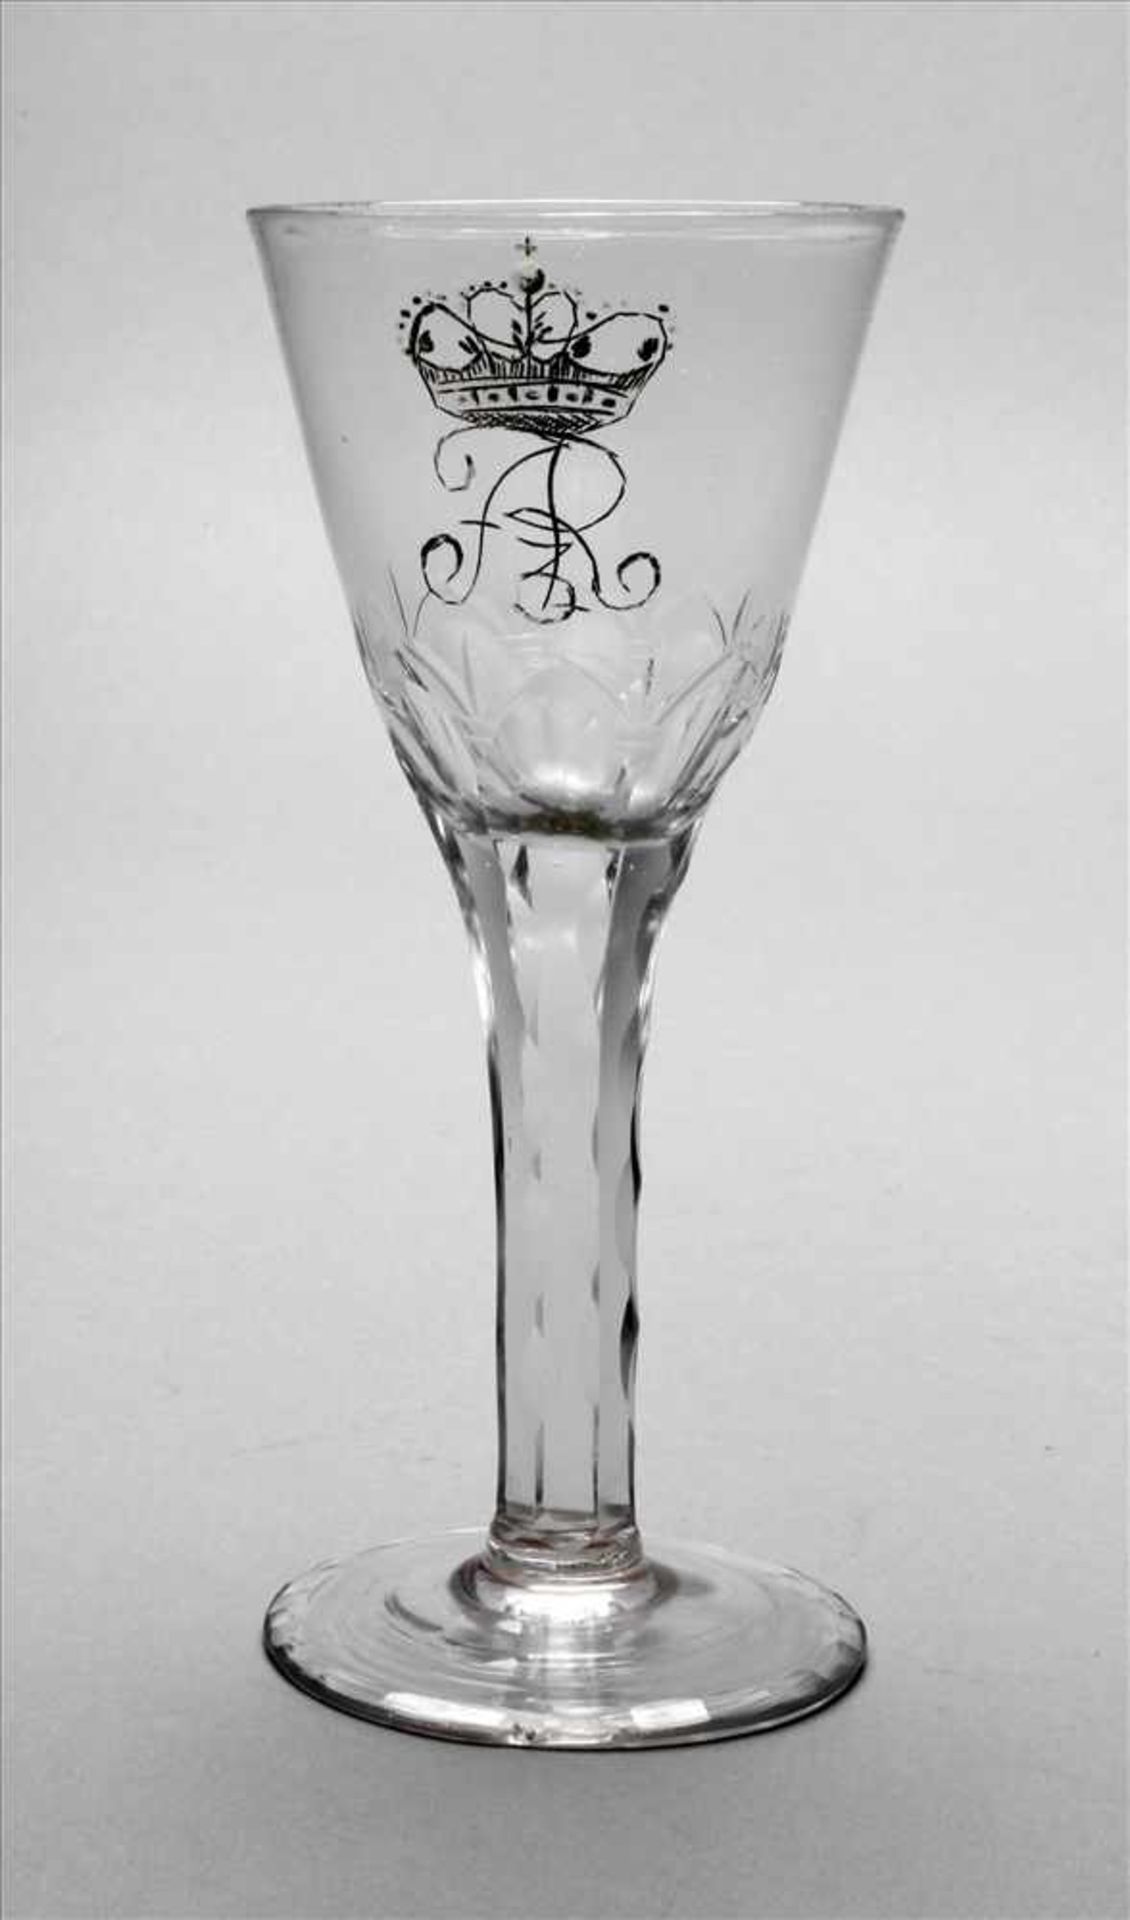 Kelchglas Friedrich August Sachsen, 1. Hälfte 18. Jh., farbloses, leicht blasiges Glas,